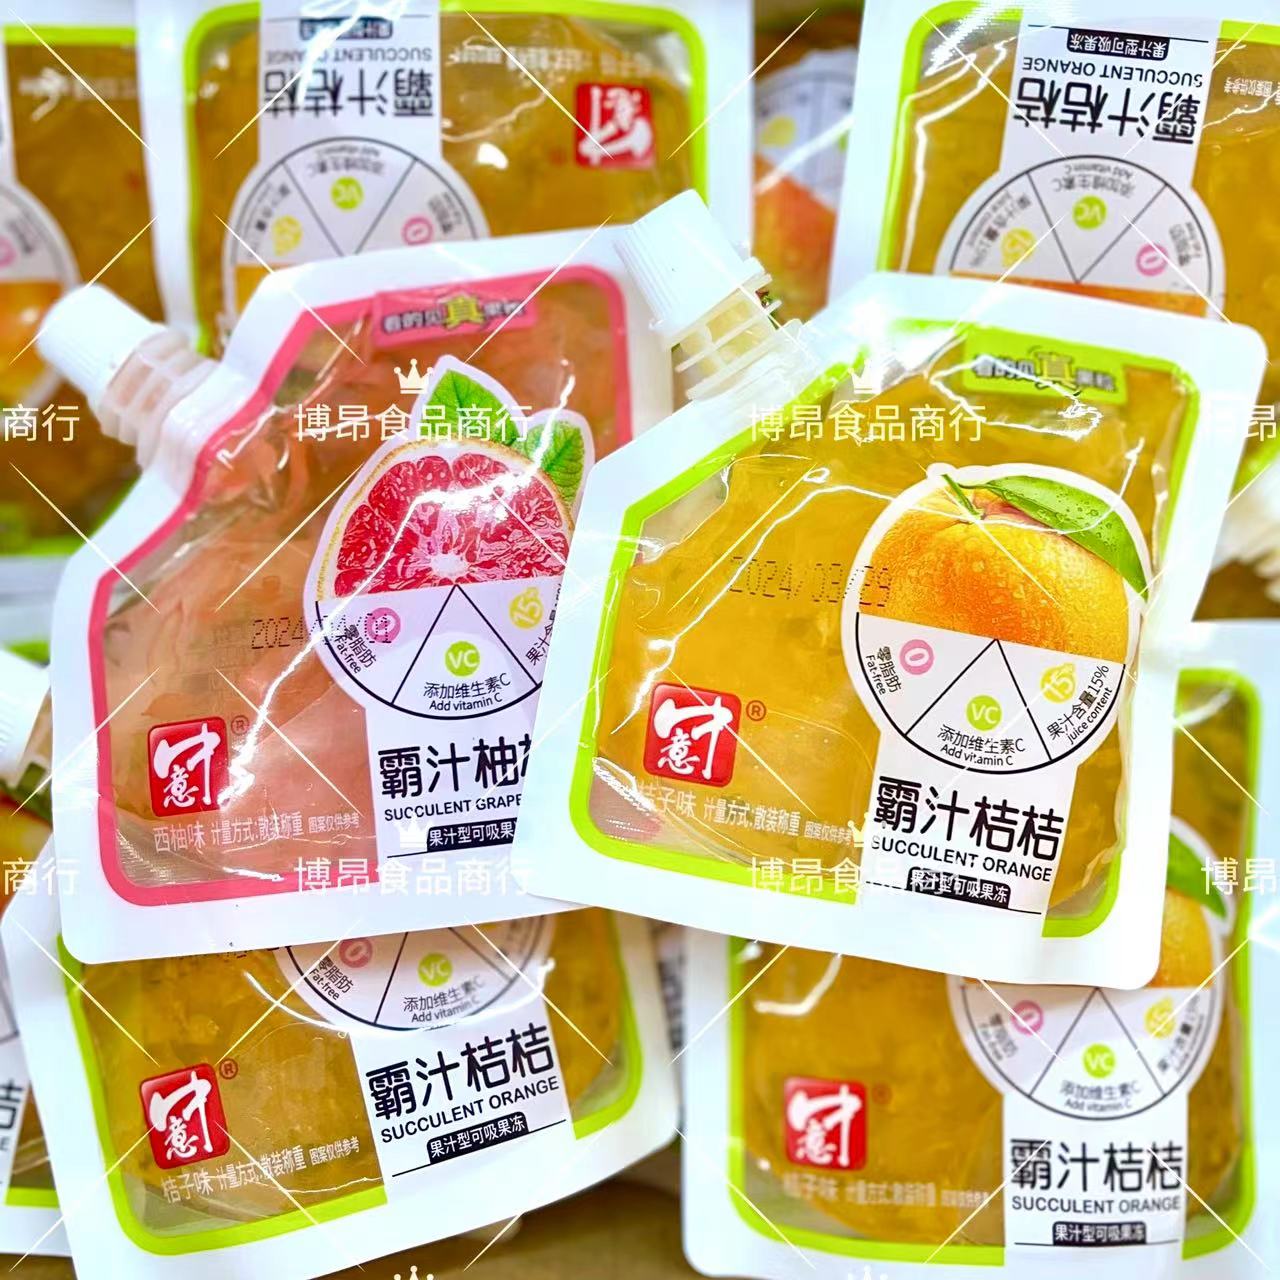 中意霸汁桔桔霸汁柚柚果汁型可吸果冻看的见真果粒散装零食手抓包